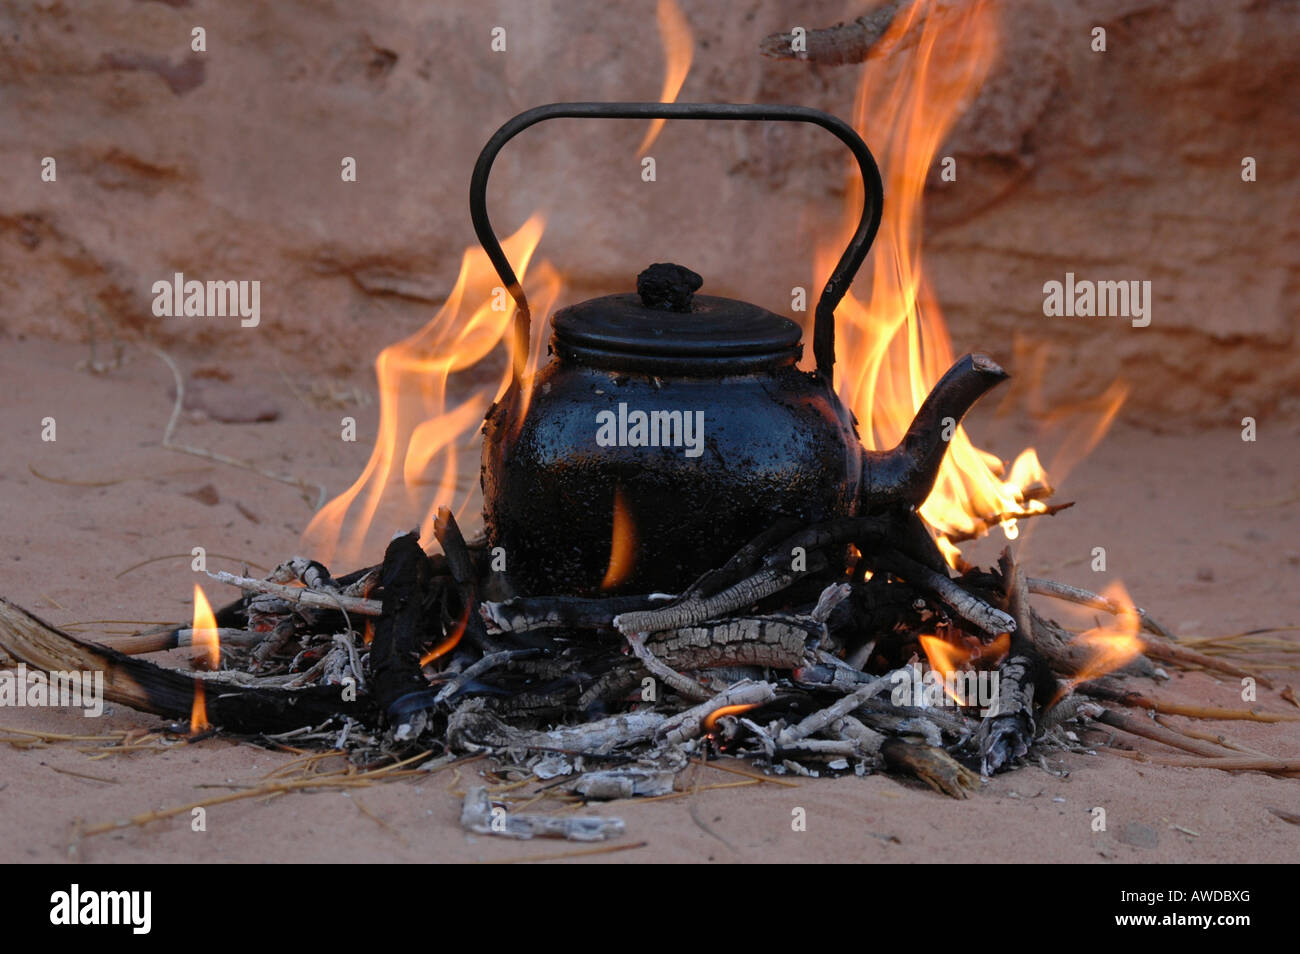 https://c8.alamy.com/comp/AWDBXG/teapot-on-the-fire-wadi-rum-jordan-AWDBXG.jpg